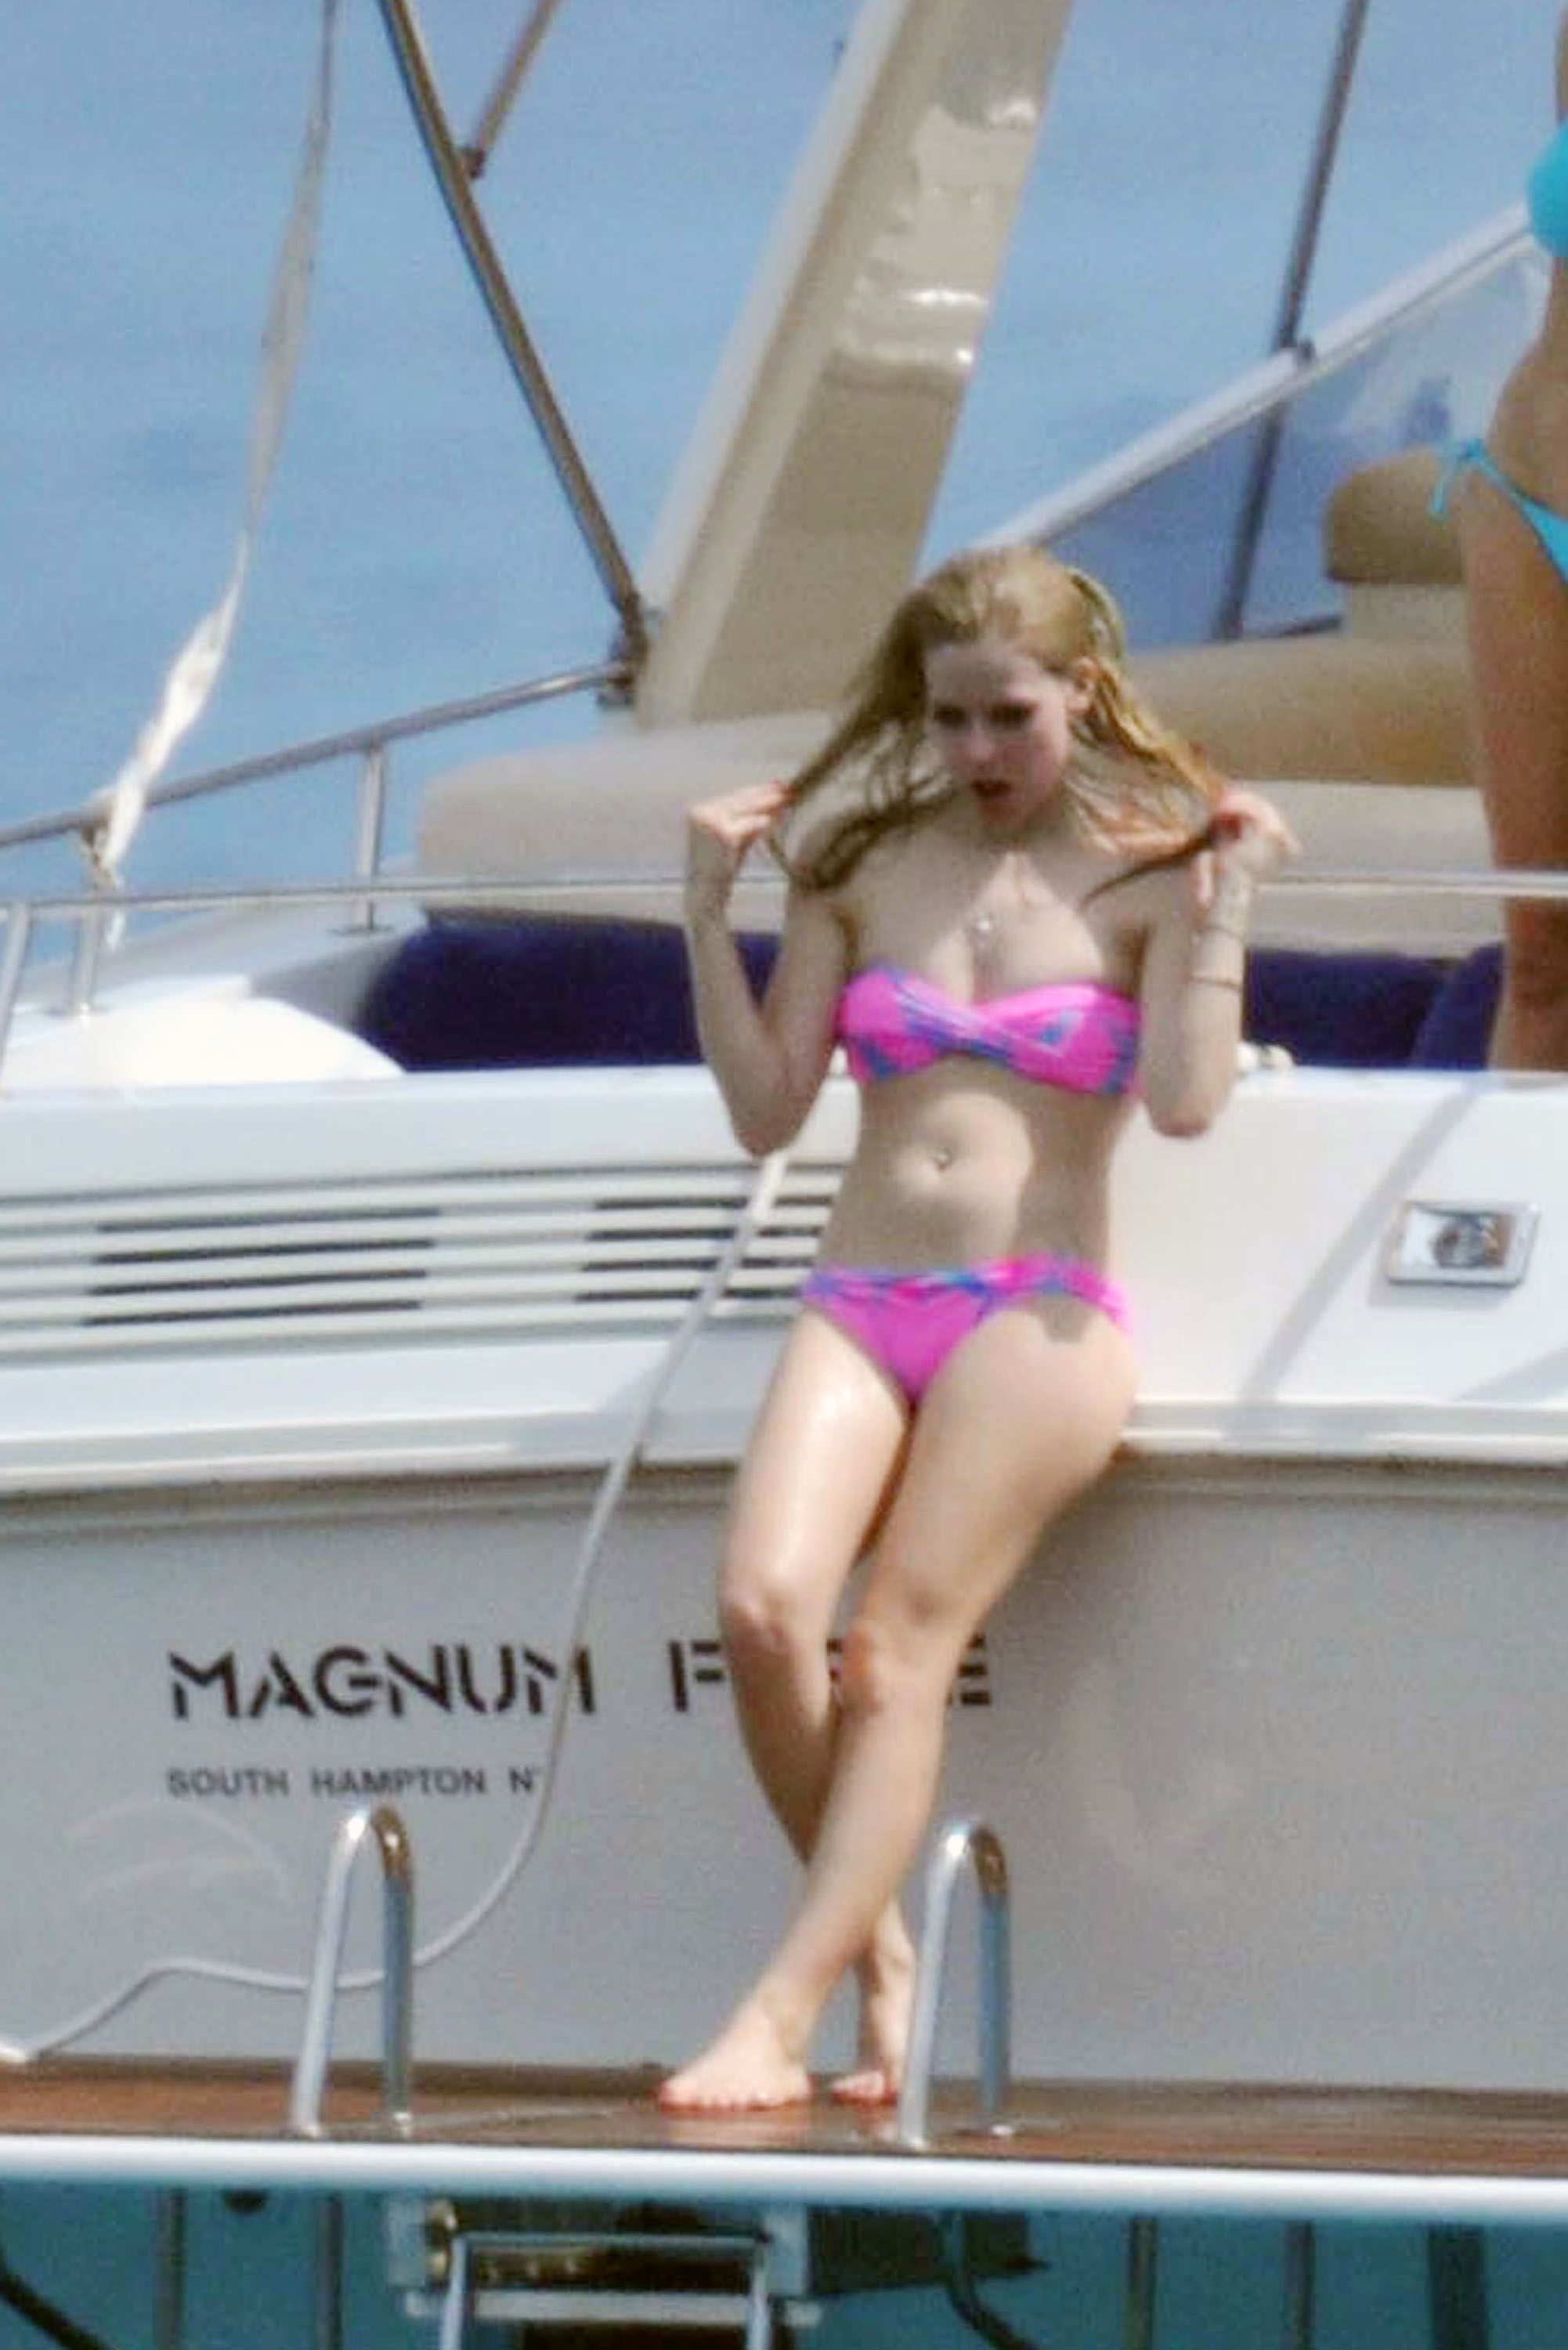 Queen C. reccomend Avril levigne bikini